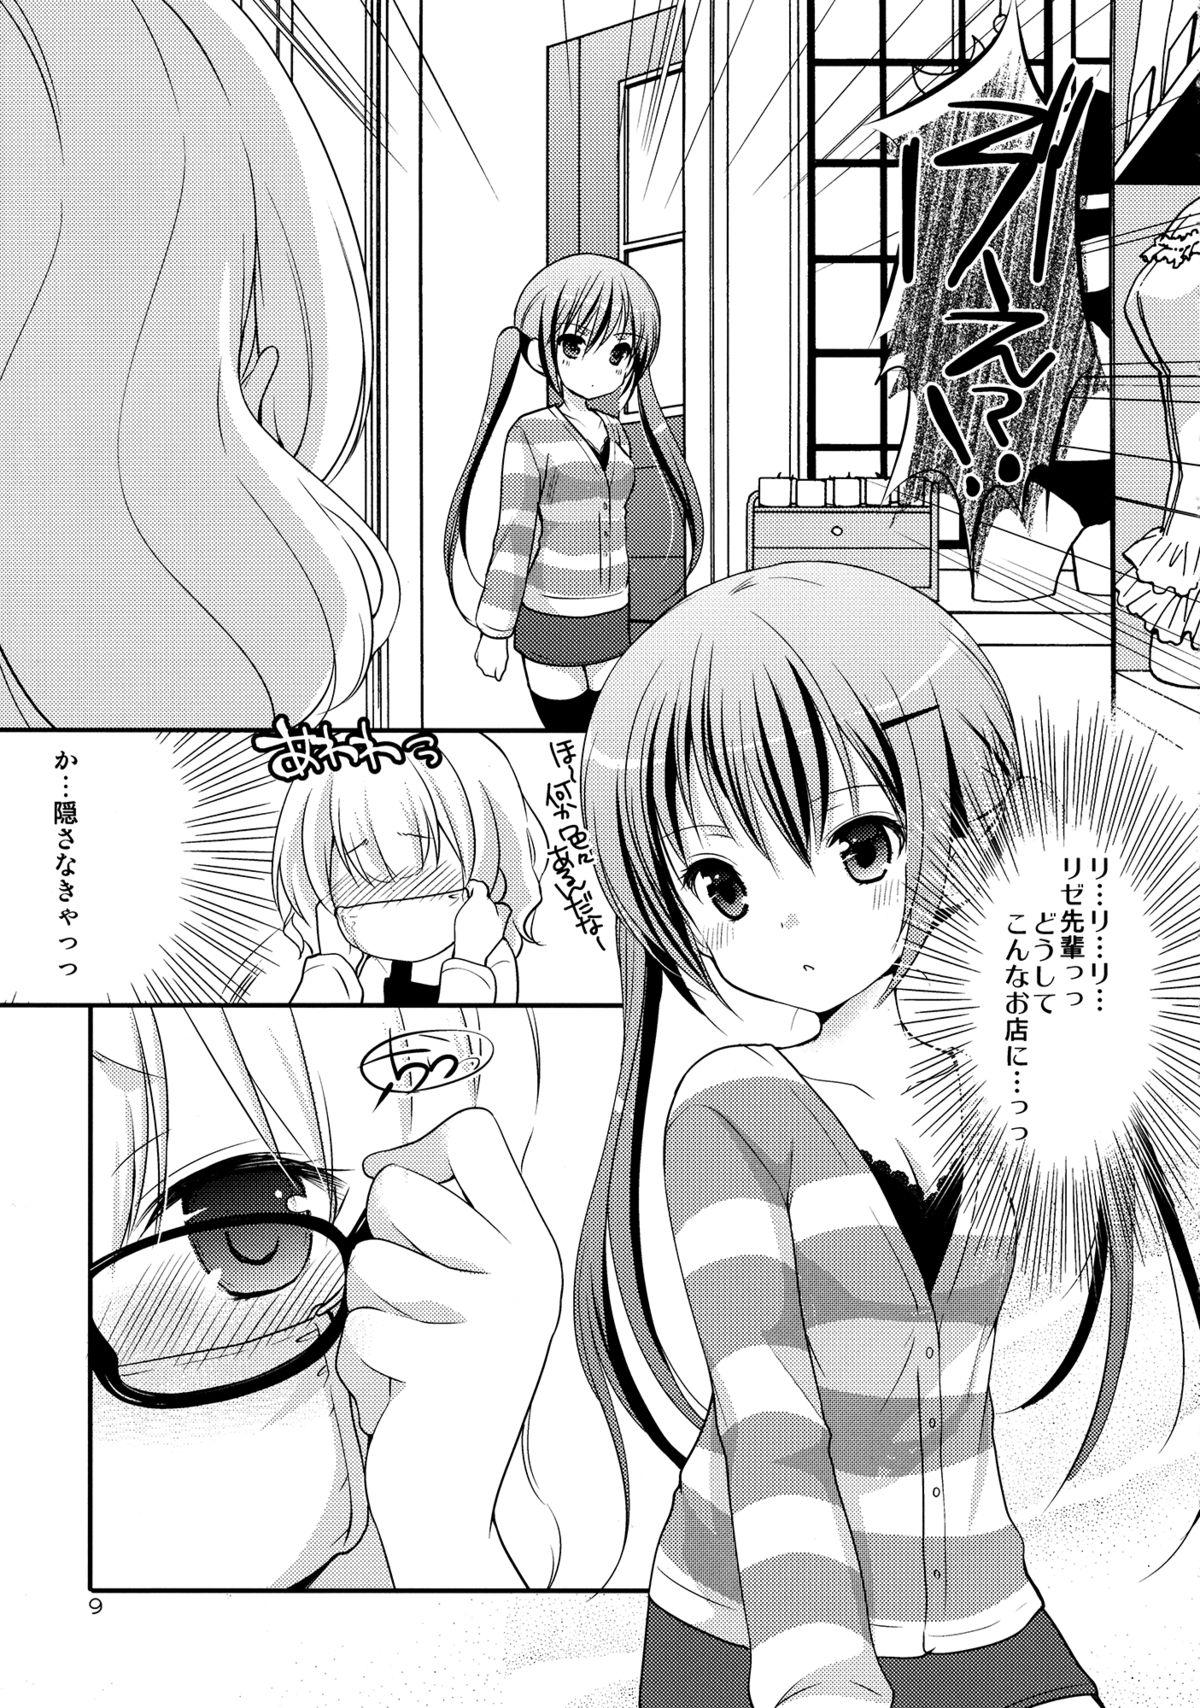 Gros Seins Sharo to Rize no Himitsu no Lesson - Gochuumon wa usagi desu ka Closeups - Page 8